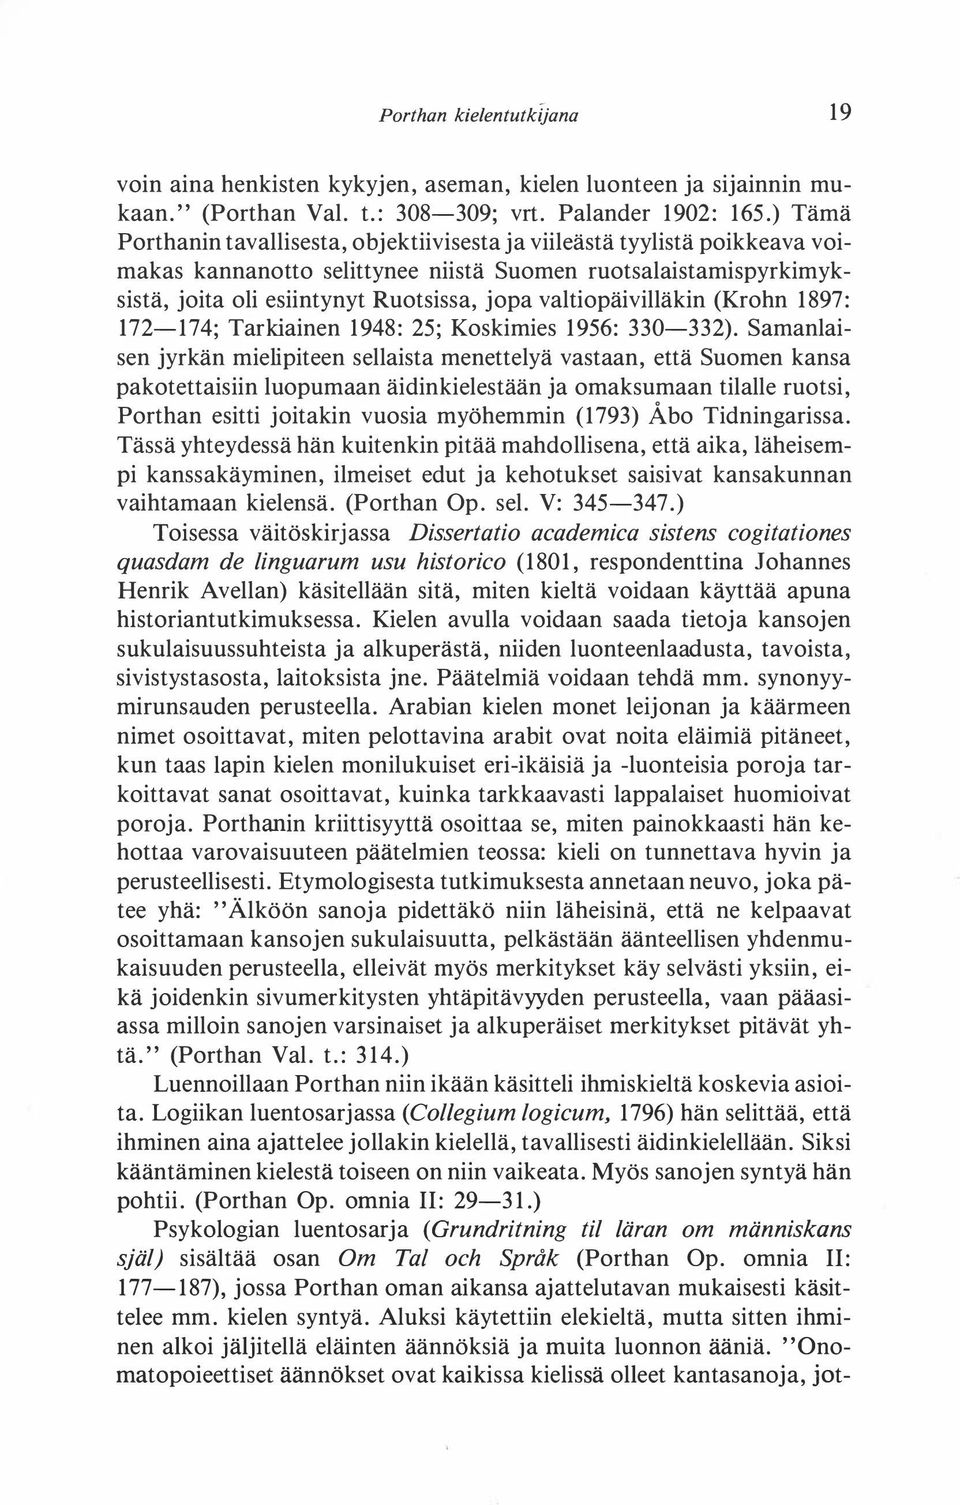 valtiopäivilläkin (Krohn 1897: 172-174; Tarkiainen 1948: 25; Koskimies 1956: 330-332).